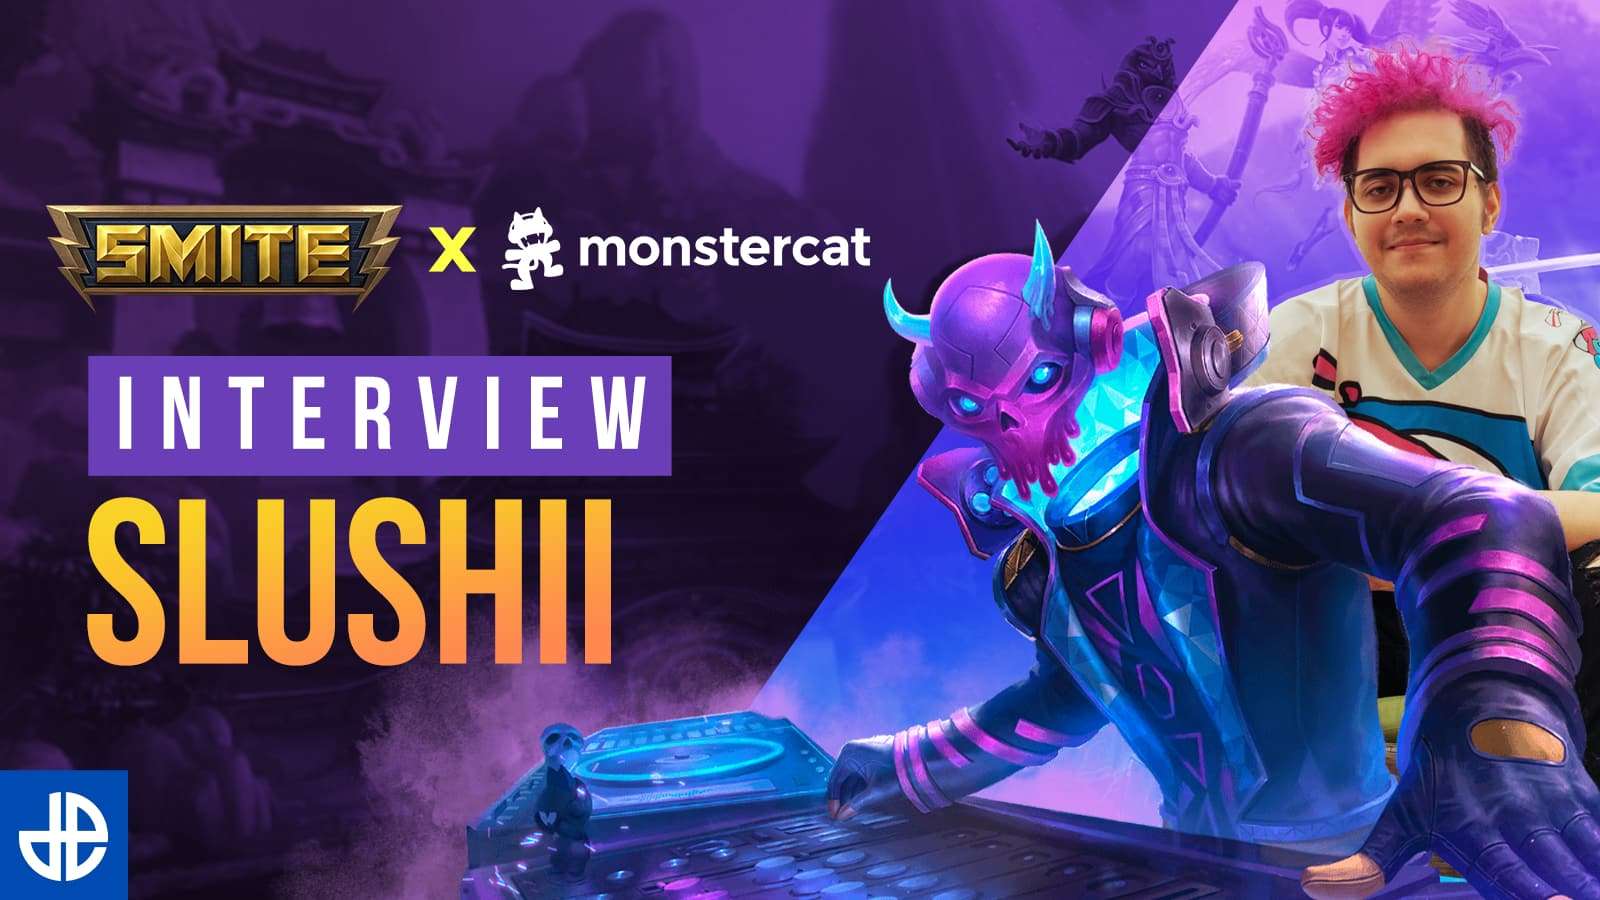 Slushii Monstercat X Smite Interview